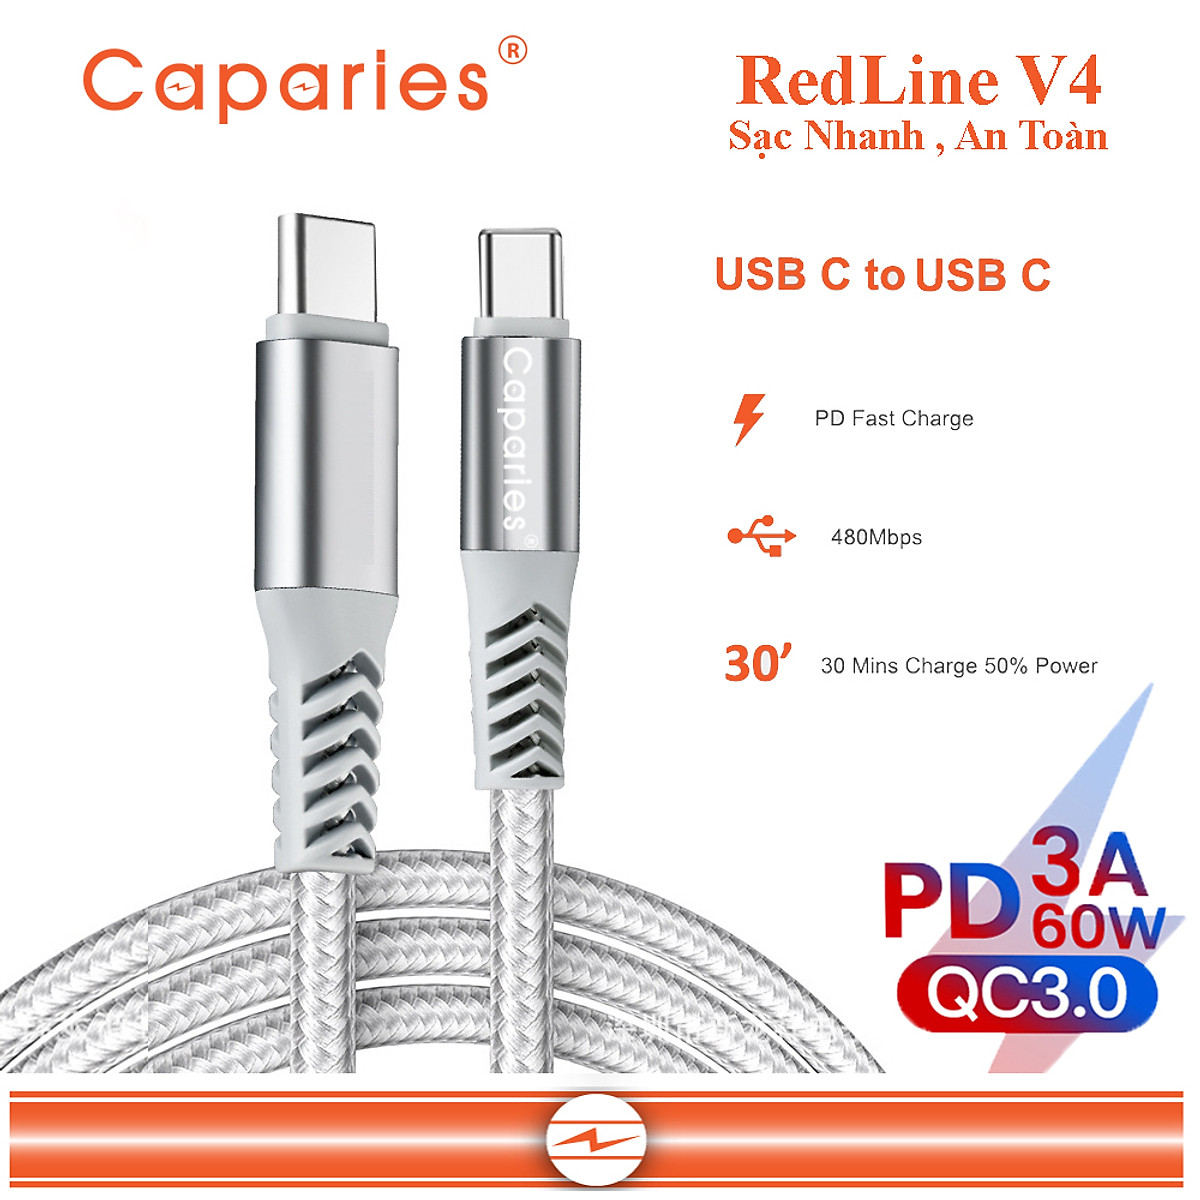 Dây Cáp Sạc 60W USB Type C To Type C Chuẩn QC 3.0  Caparies Redline V4 - Hàng Chính Hãng